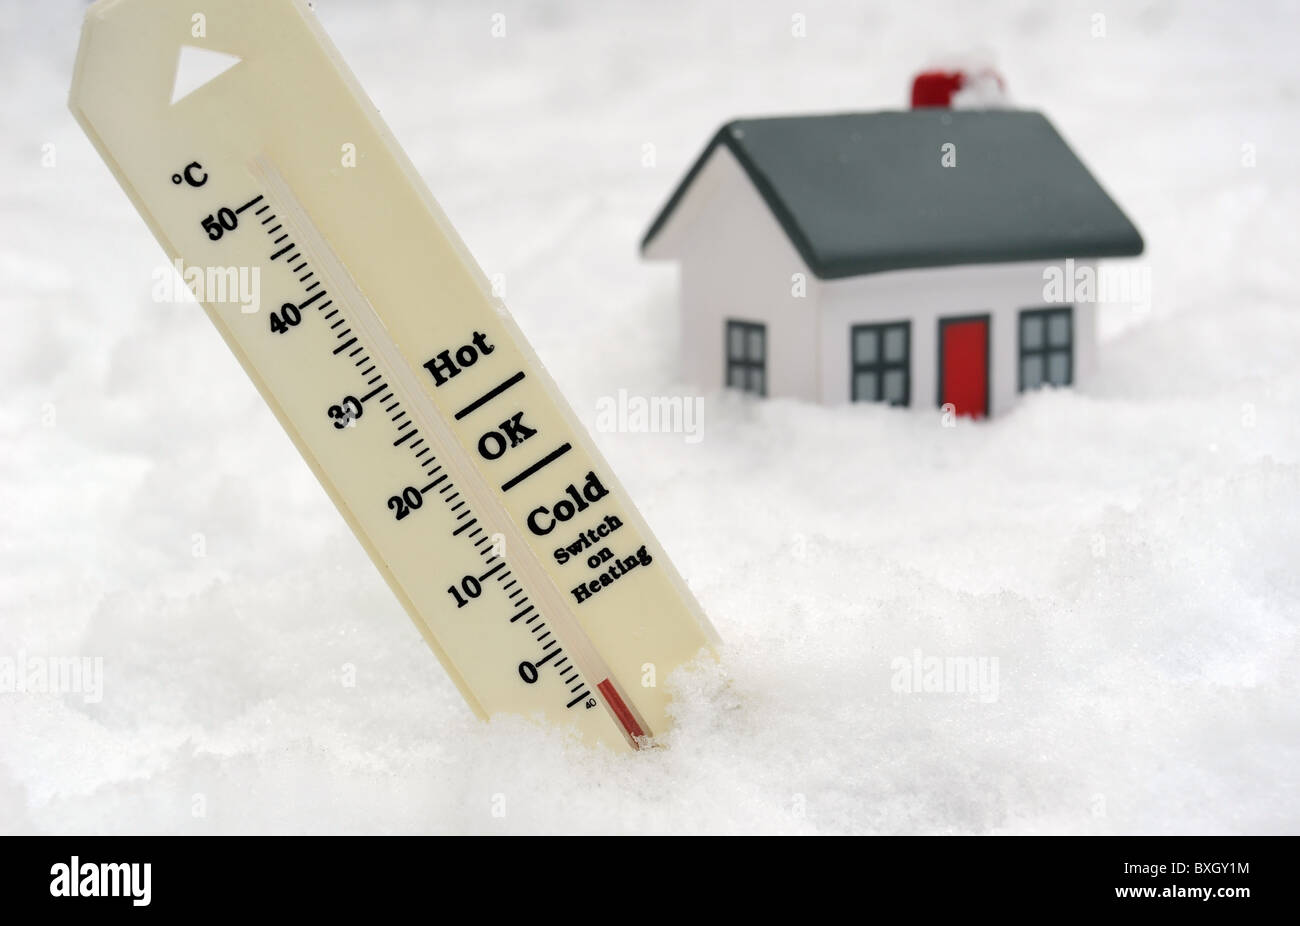 Thermomètre en montrant moins de neige en hiver la température avec l'ALLUMEZ LE CHAUFFAGE À SIGNER ET HOUSE UK Banque D'Images